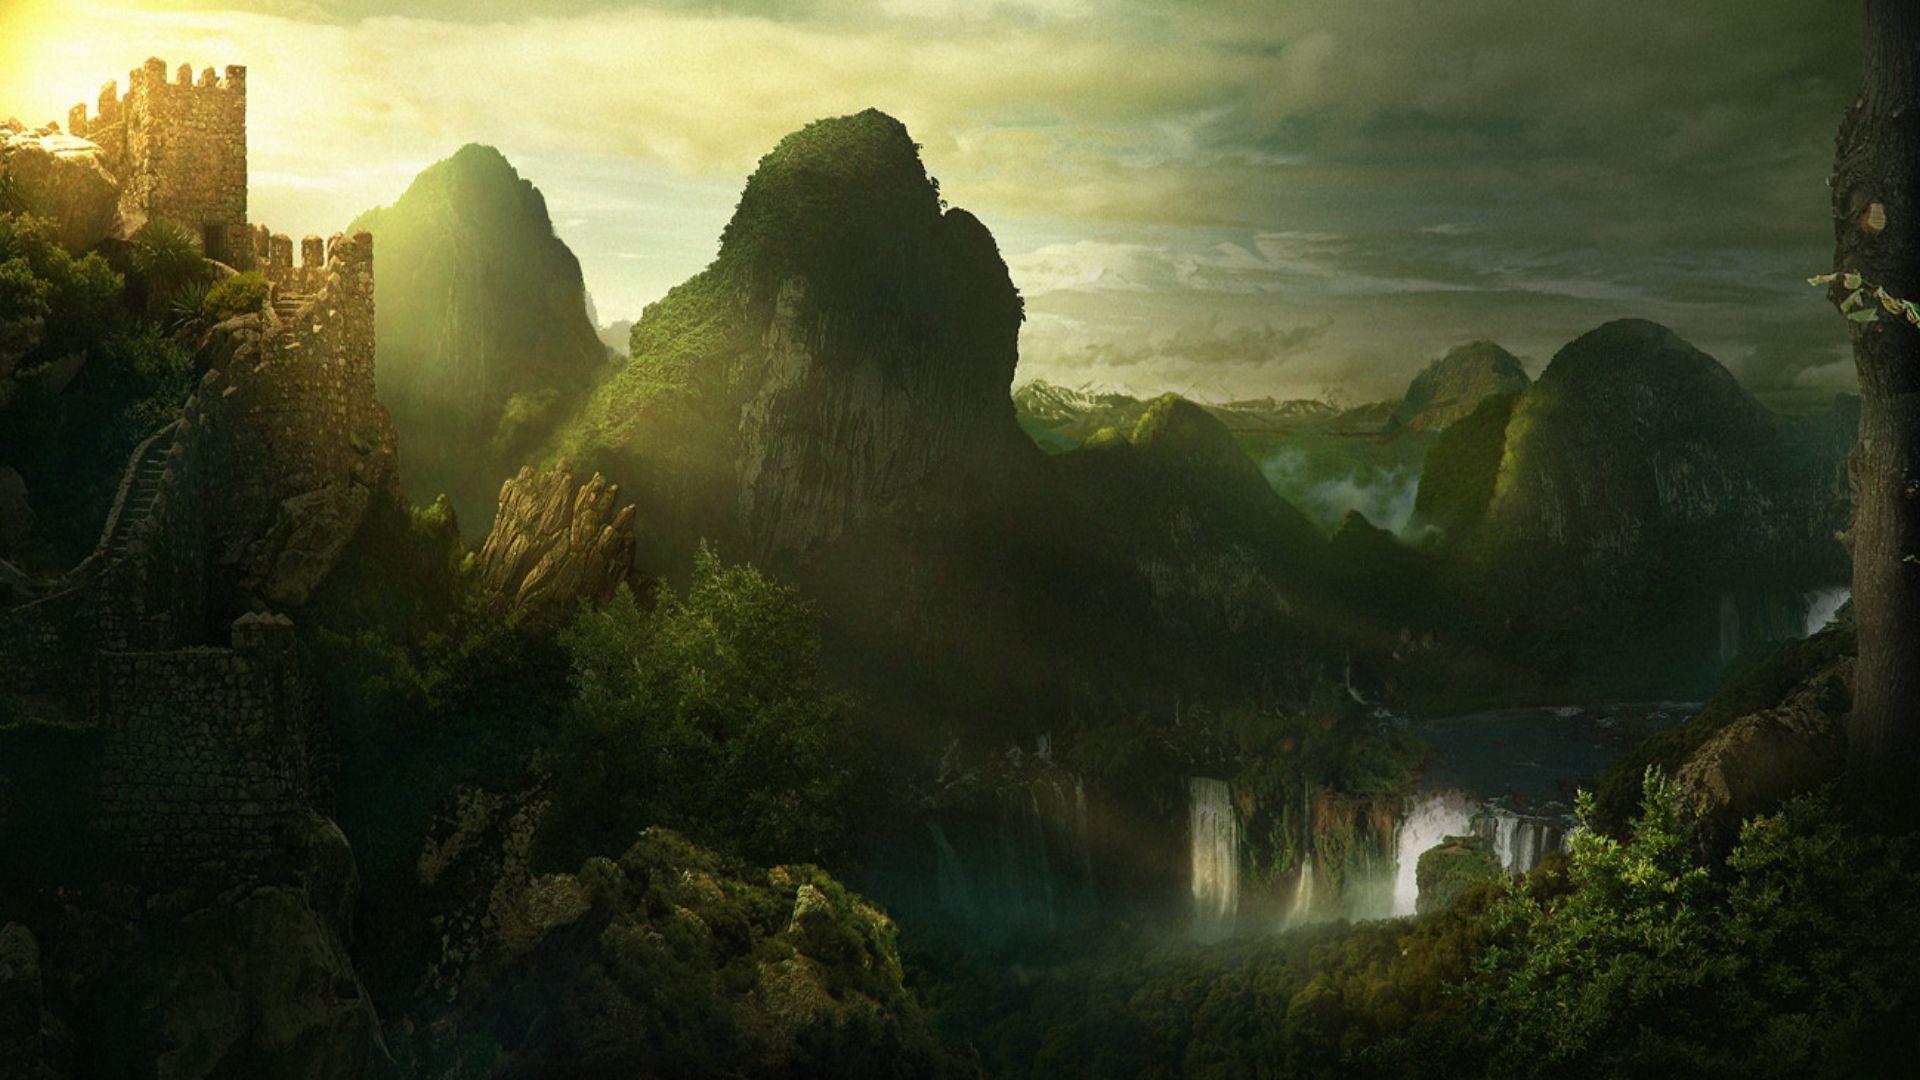 Download A Castle hides amid a Fantasy Landscape Wallpaper | Wallpapers.com